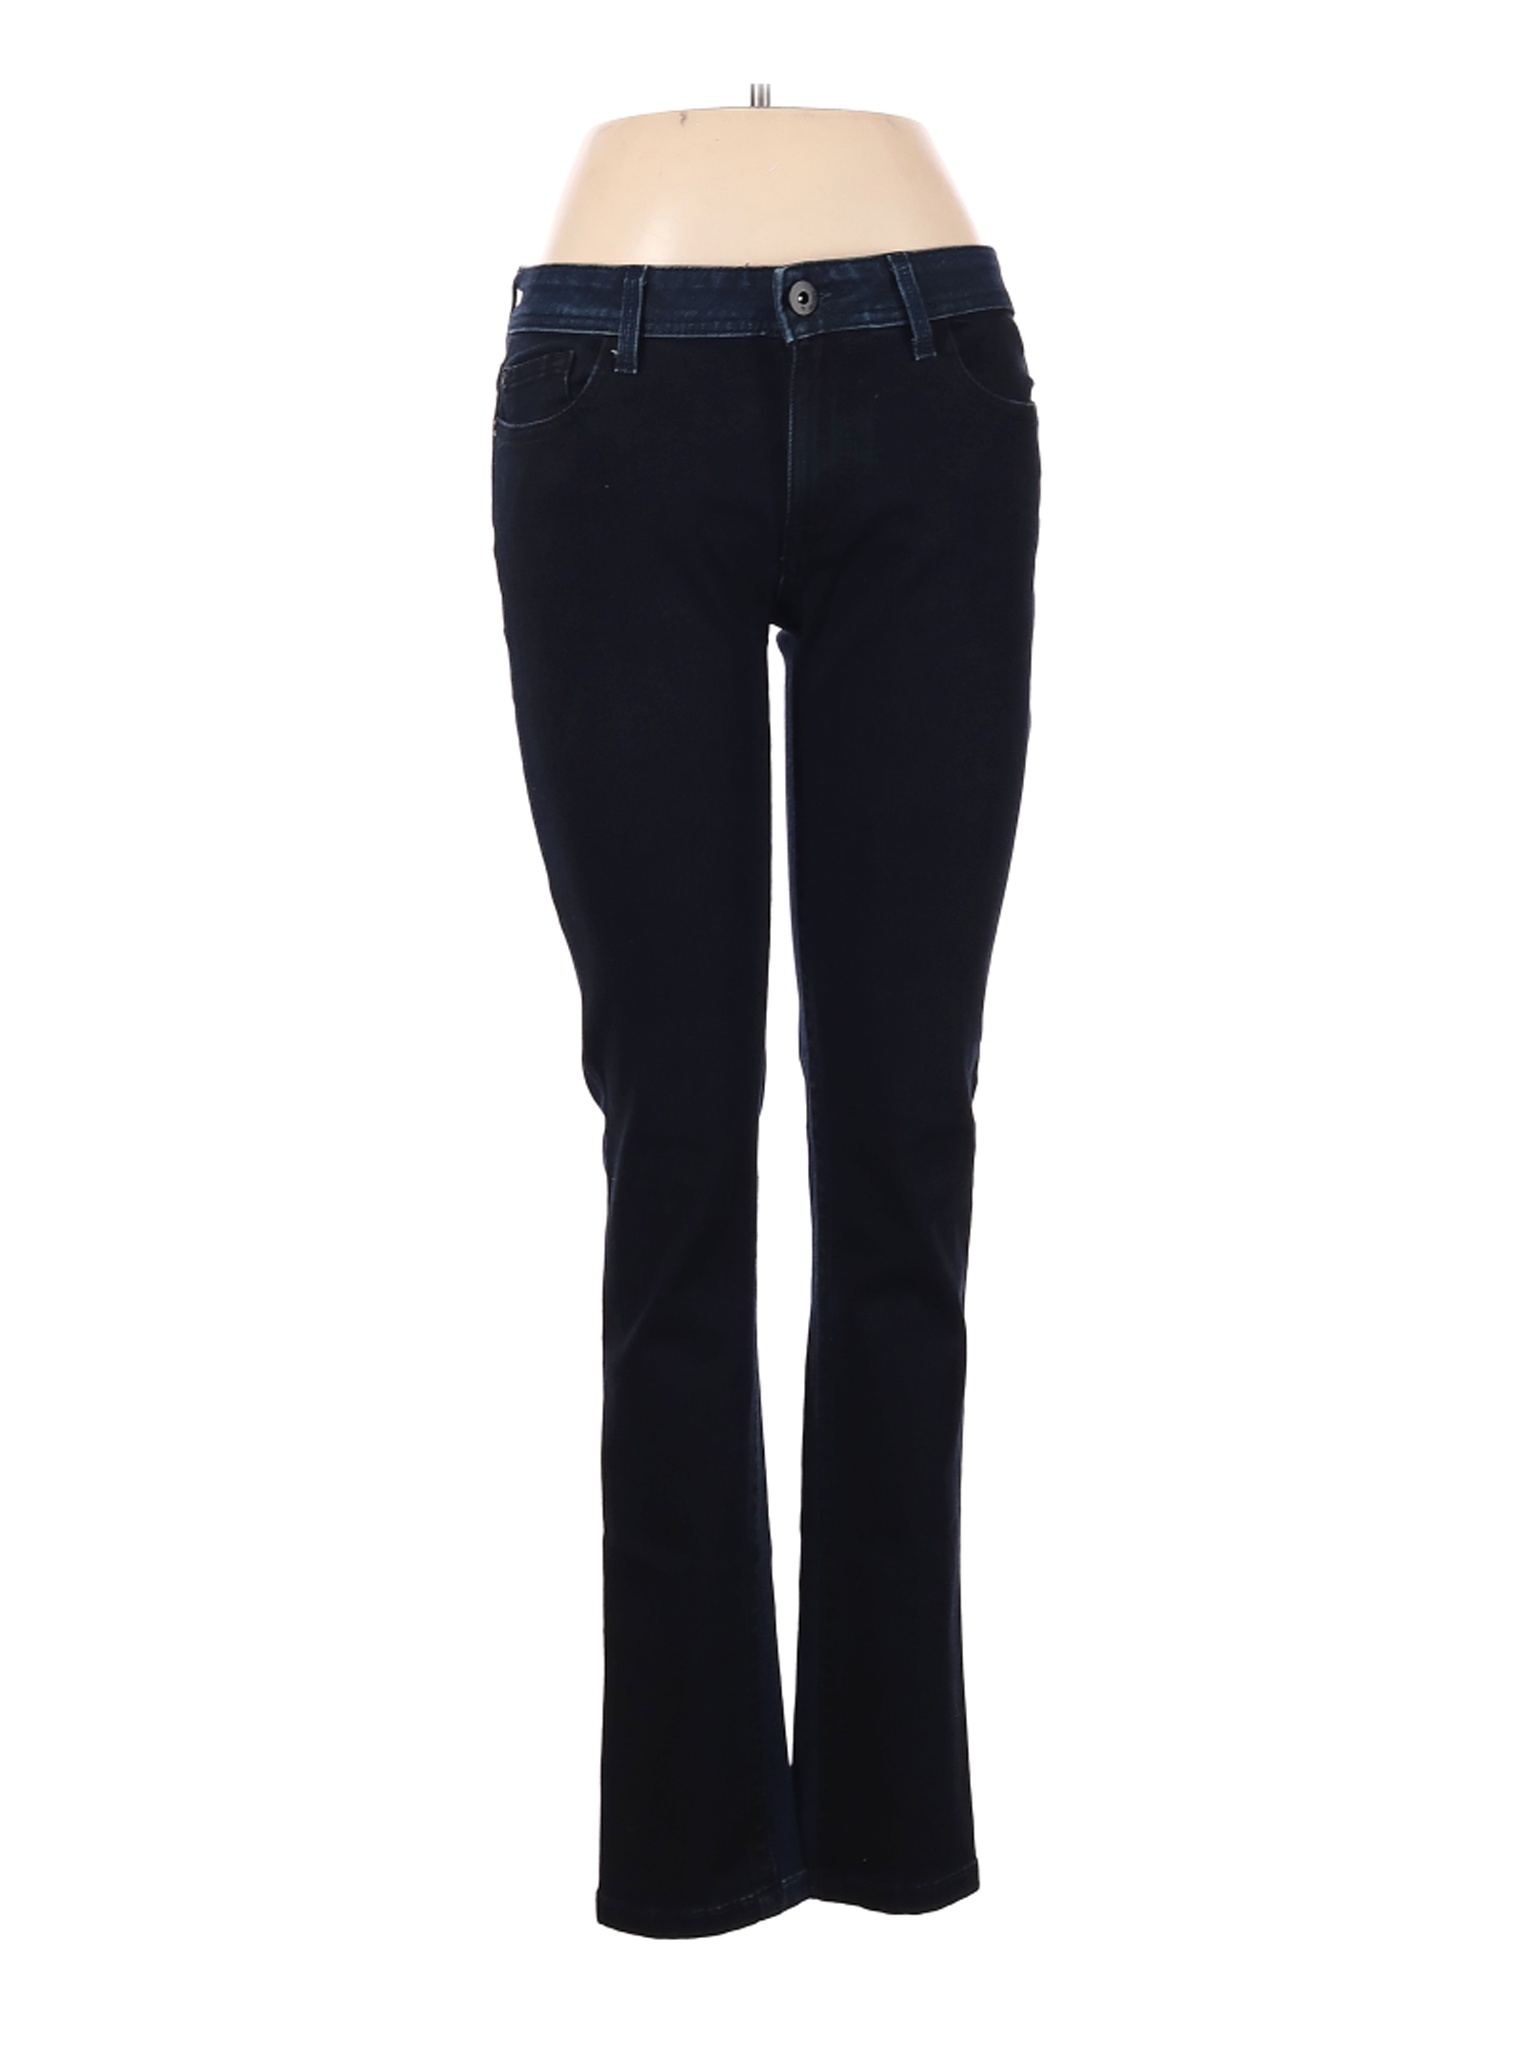 DL1961 Women Black Jeans 29W | eBay